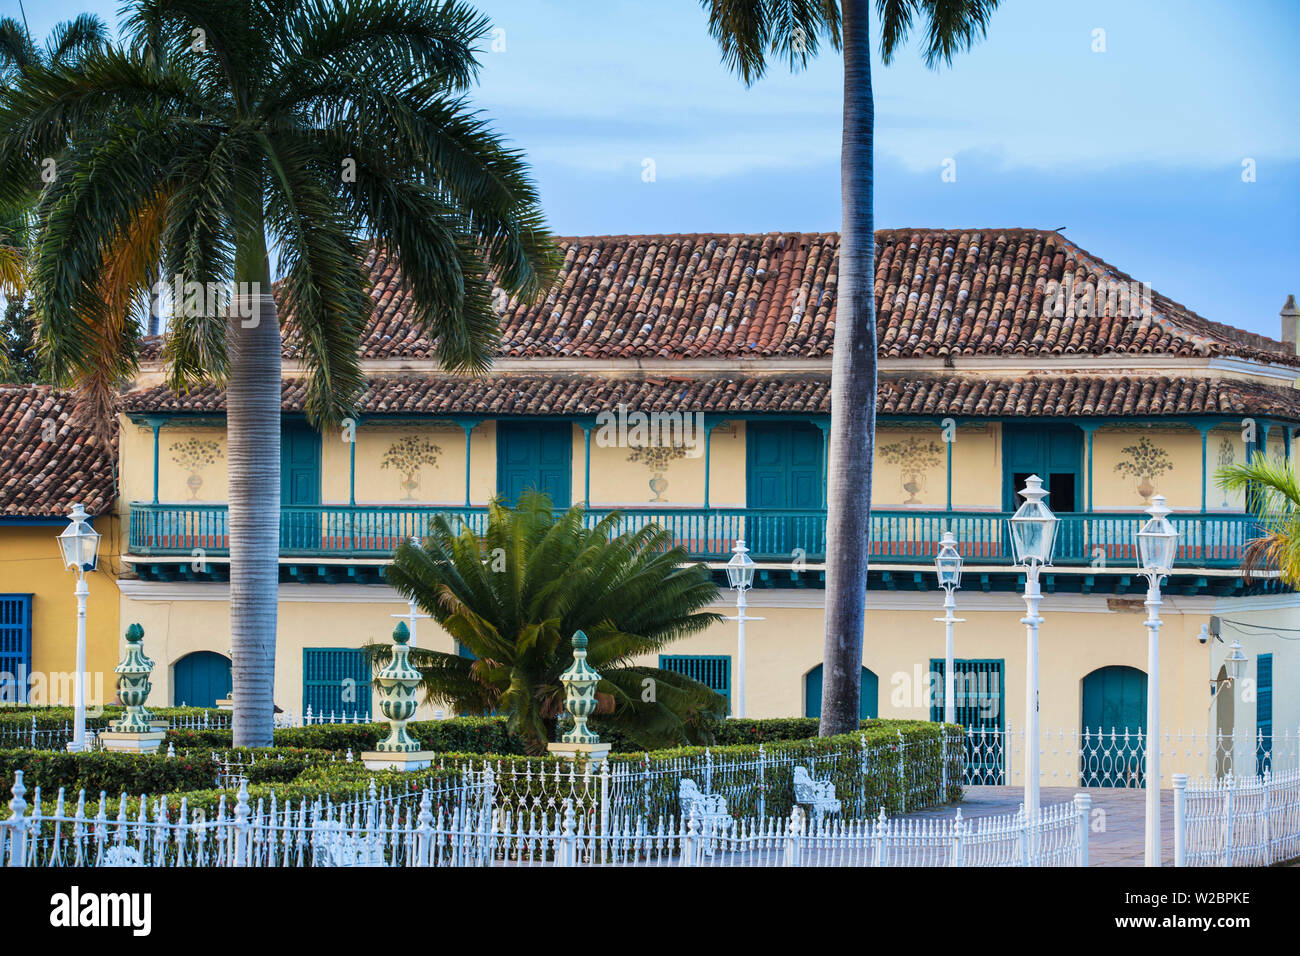 Cuba, Trinidad, Plaza Mayor, Galeria de Arte at the former Palacio Ortiz - The Casa de Aldeman Ortiz - a Colonial mansion from 1809 that was originally built for Ortiz de Zuniga, a slave trader and mayor of Trinidad. Stock Photo